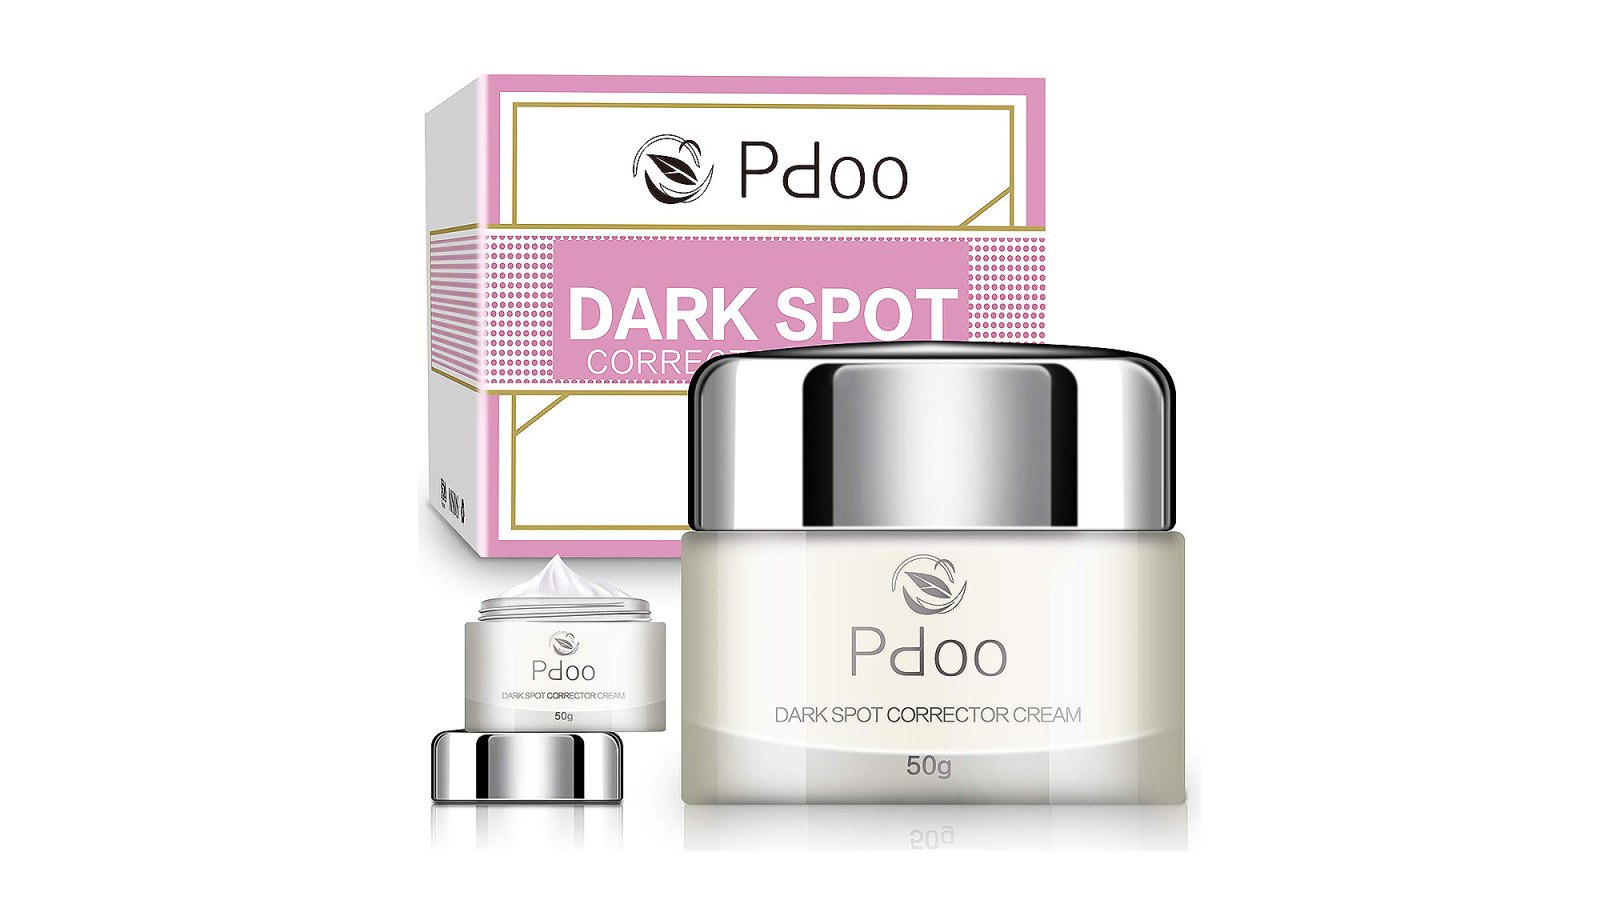 PDOO Dark Spot Corrector for Face and Body